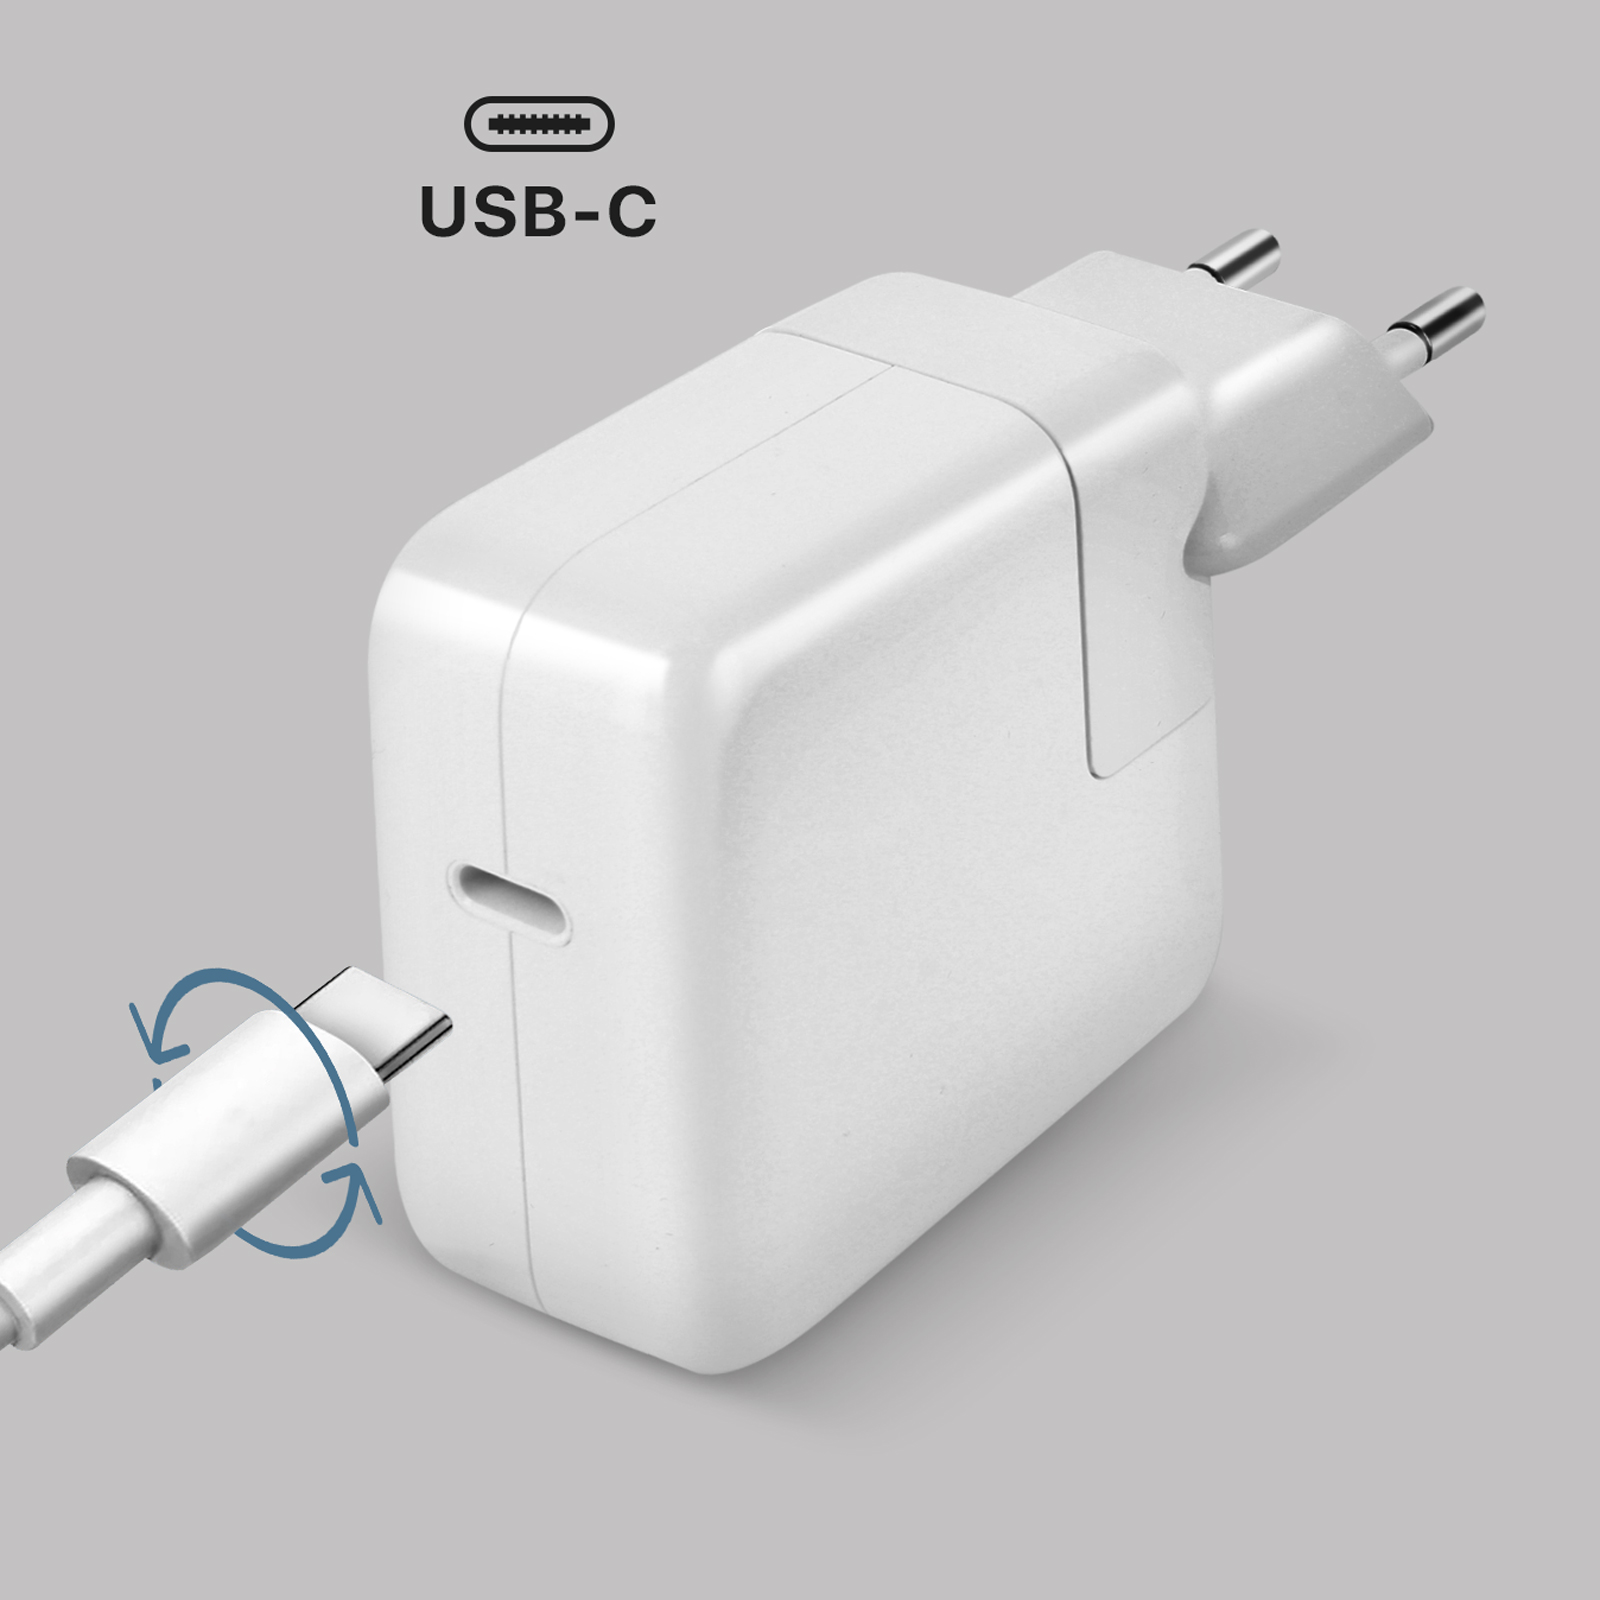 Carregador iPhone, iPad e MacBook Air, USB-C